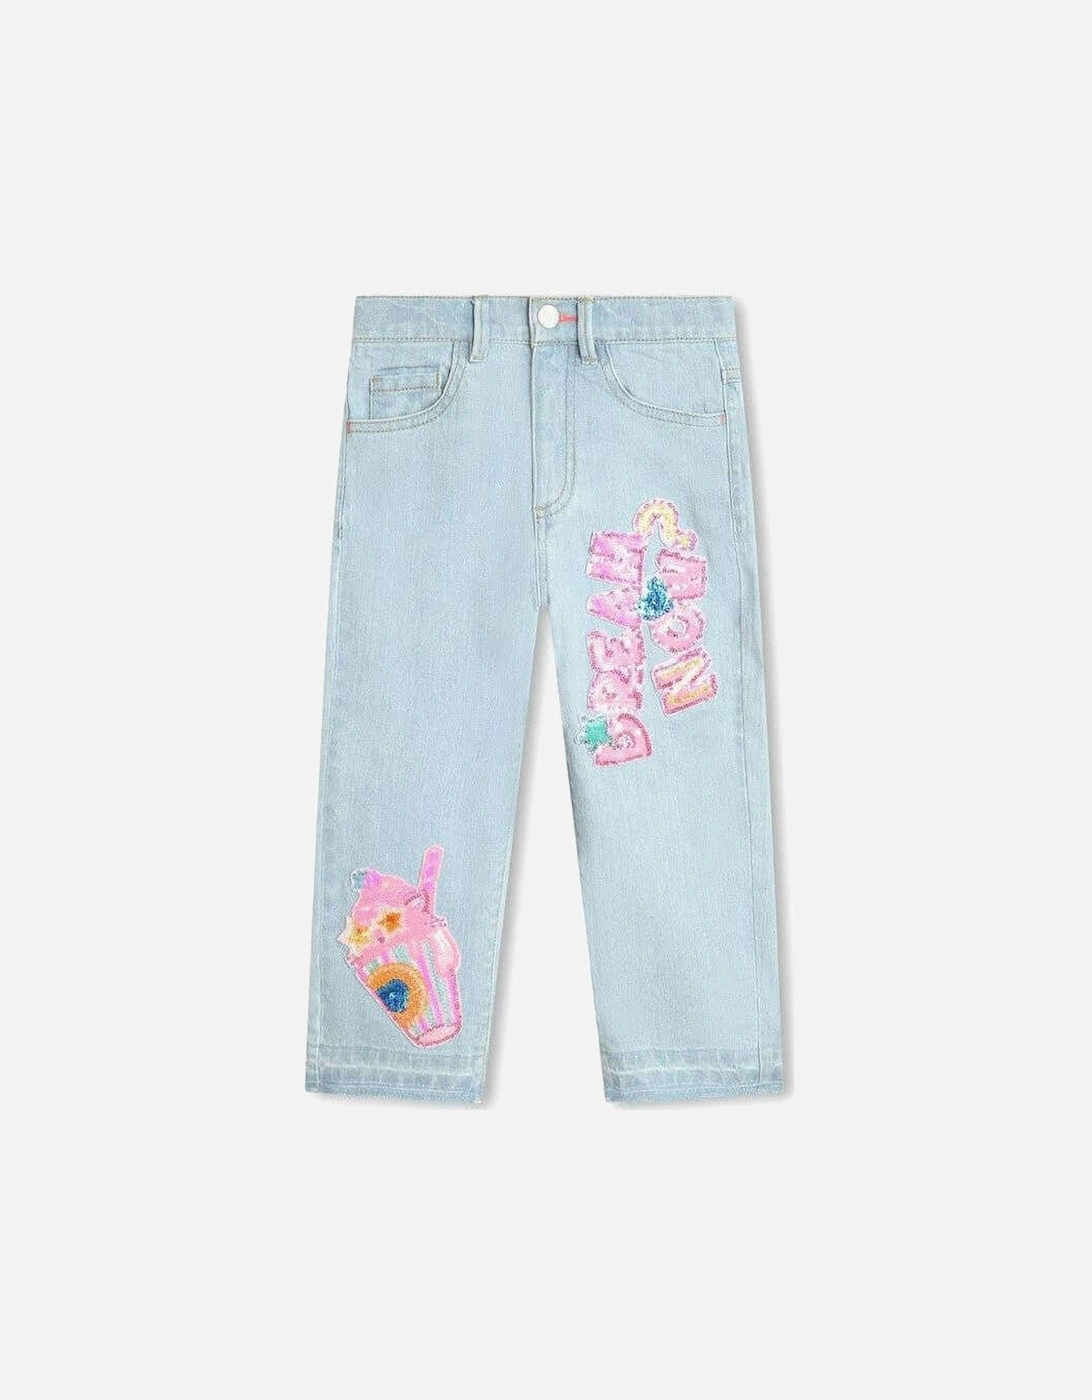 Girls Denim Sequin Jeans, 3 of 2